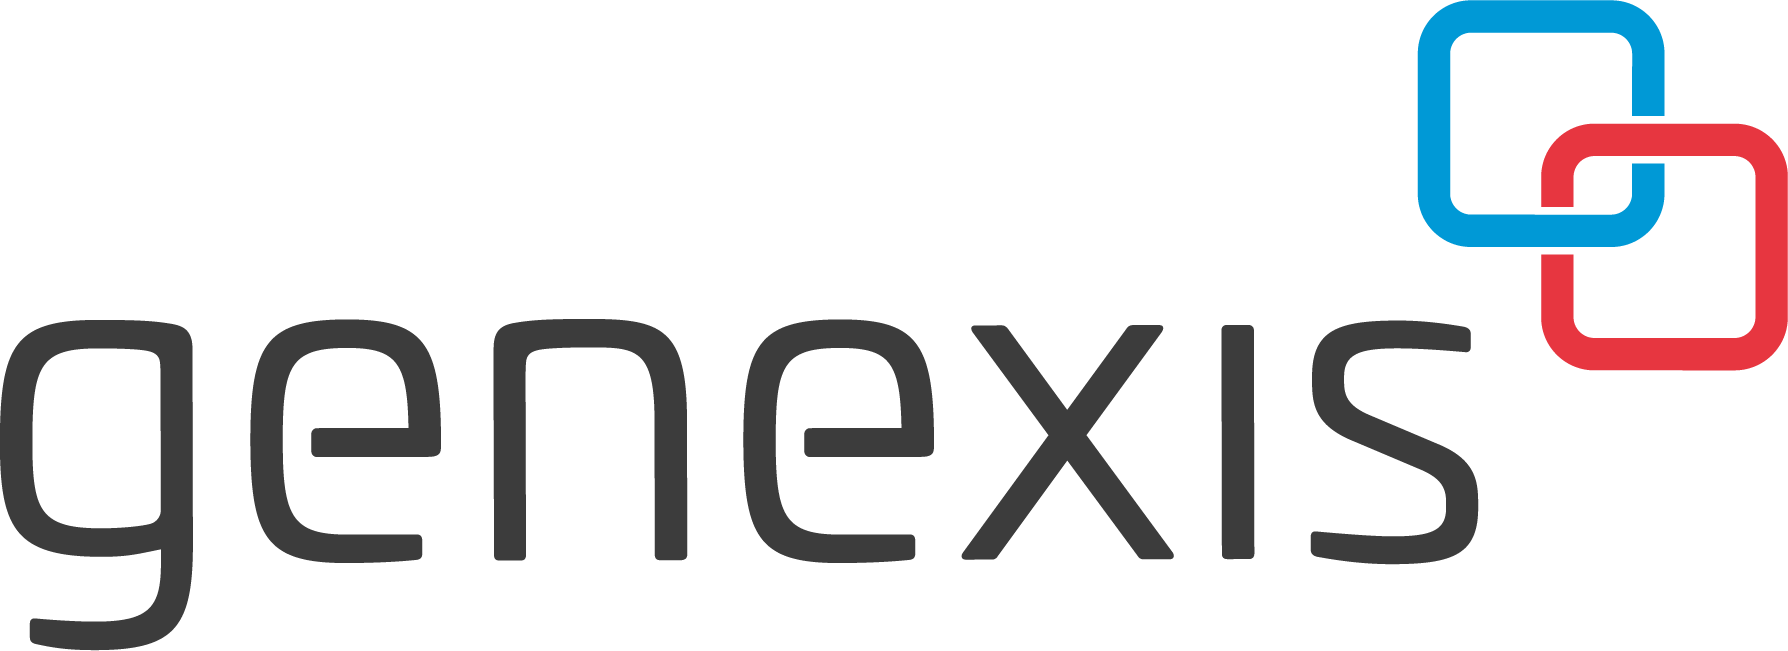 genexis logo